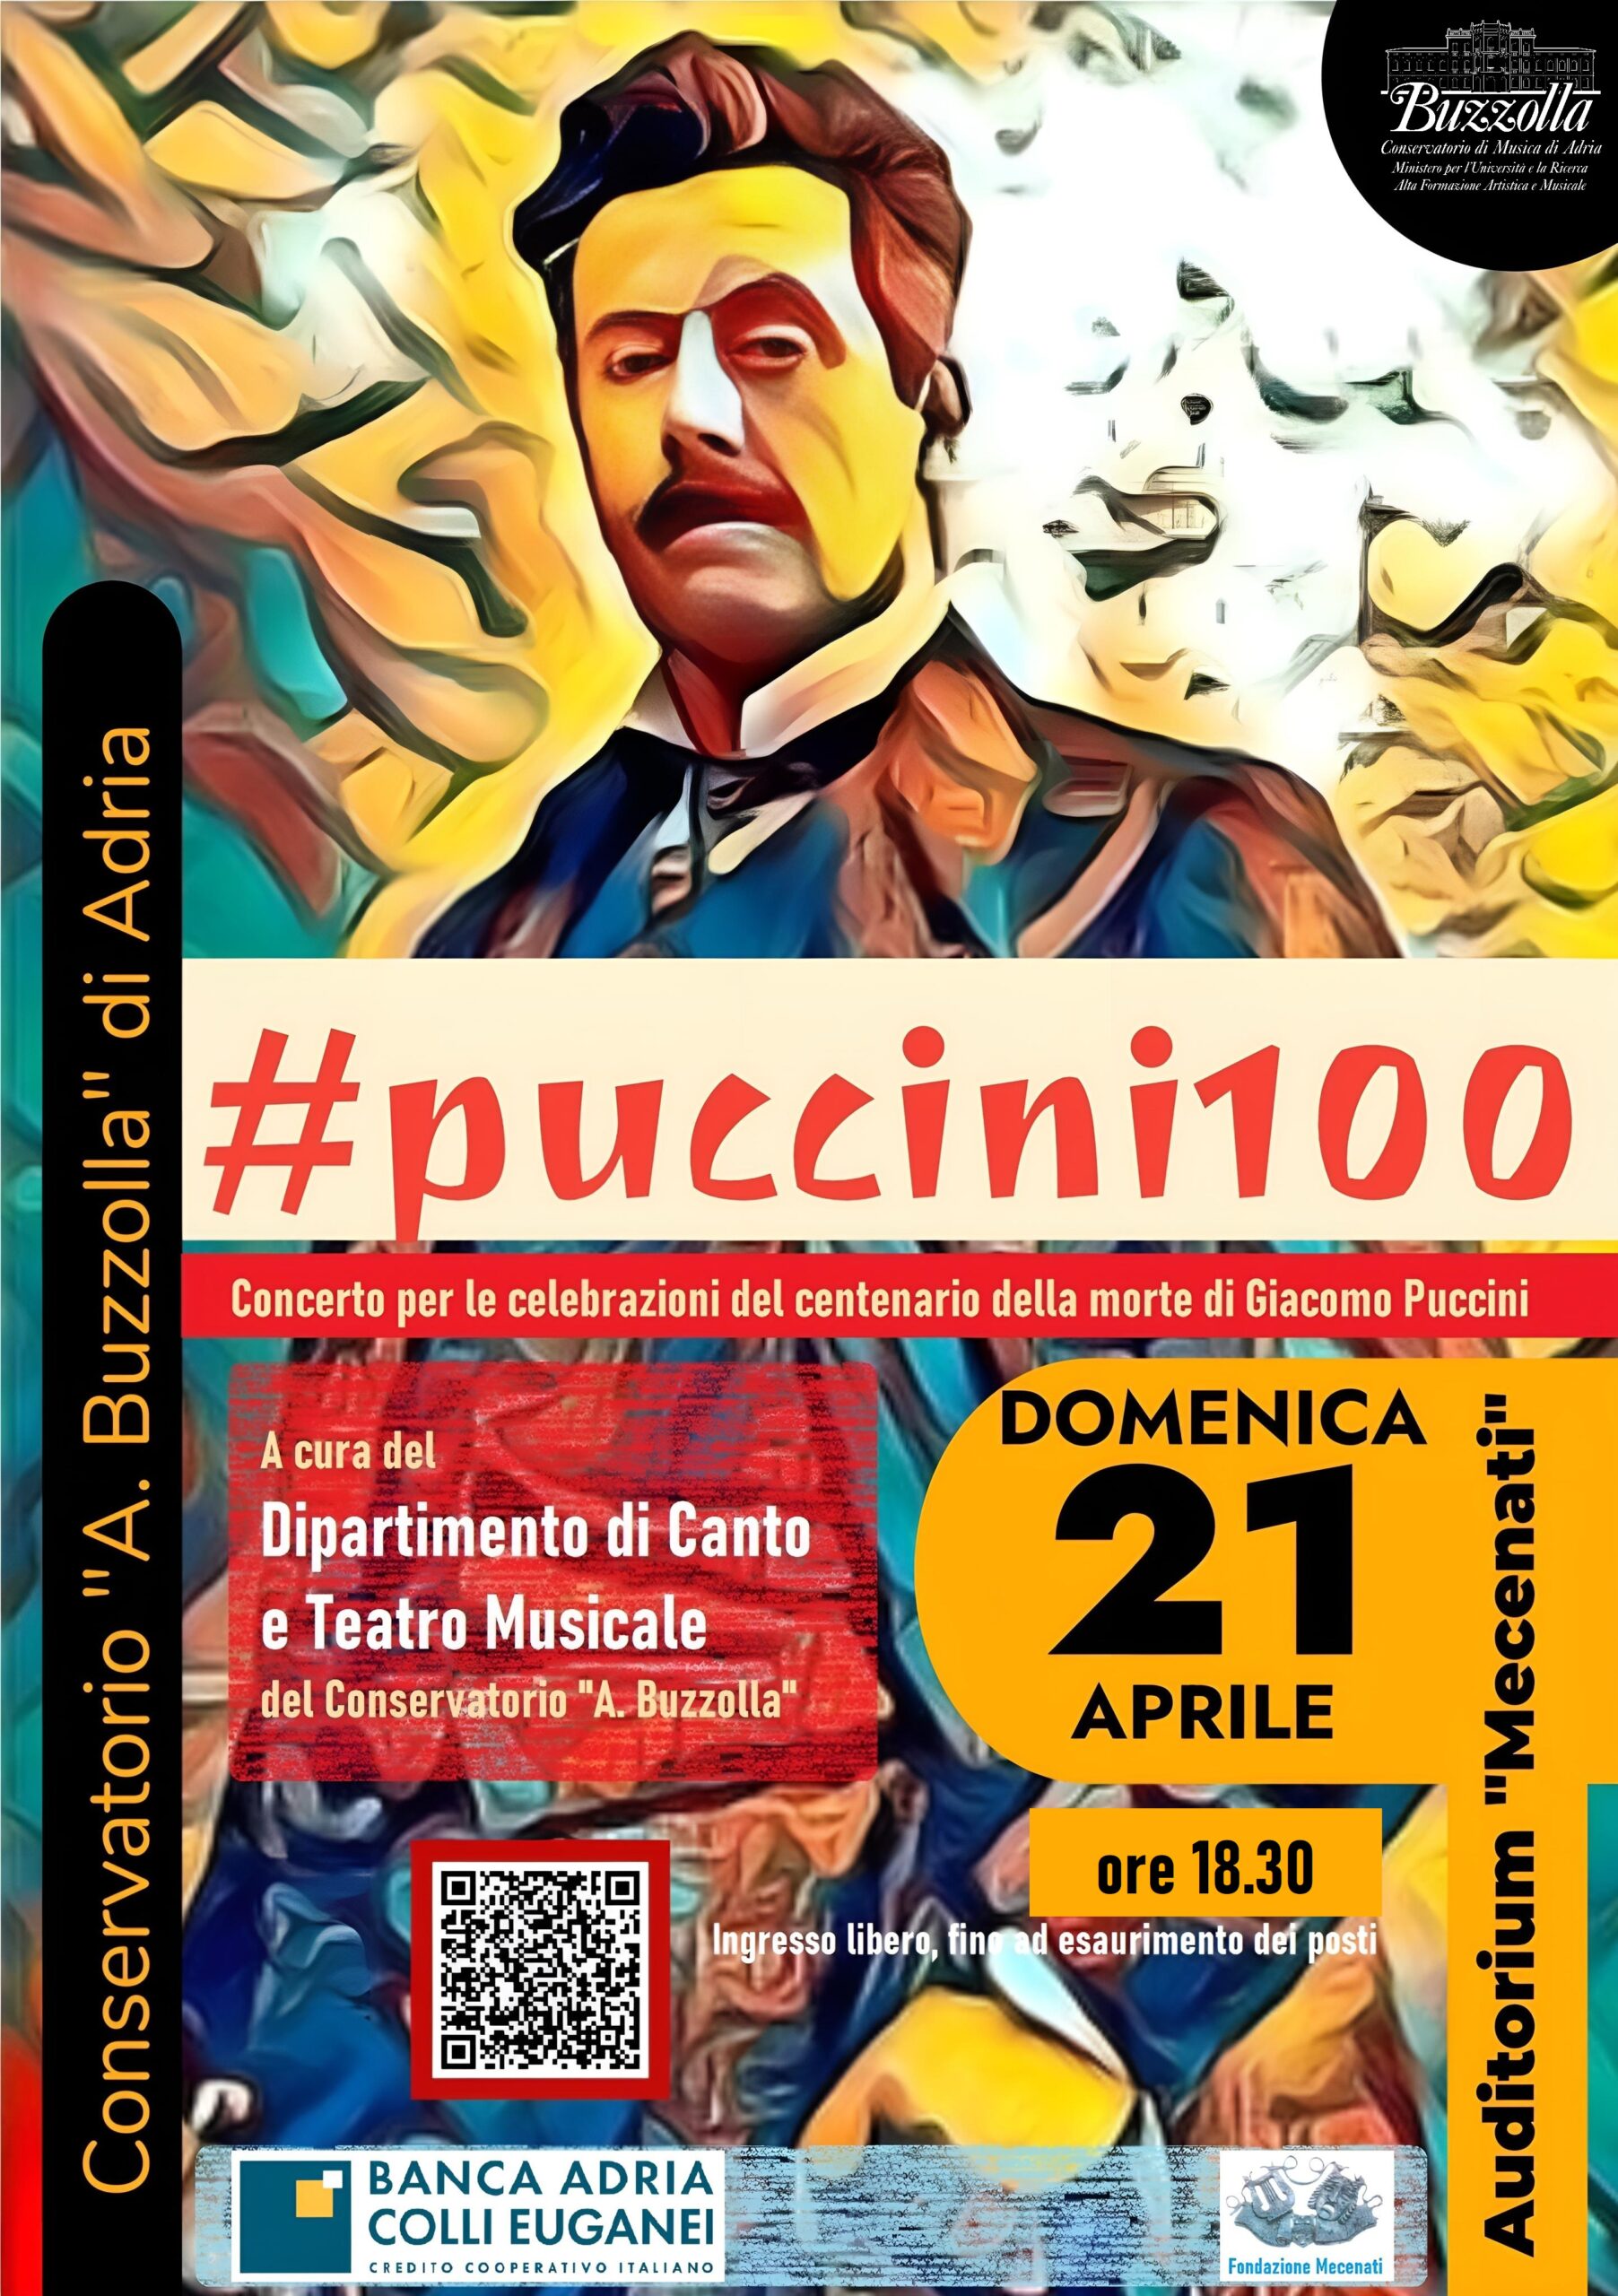 #puccini100